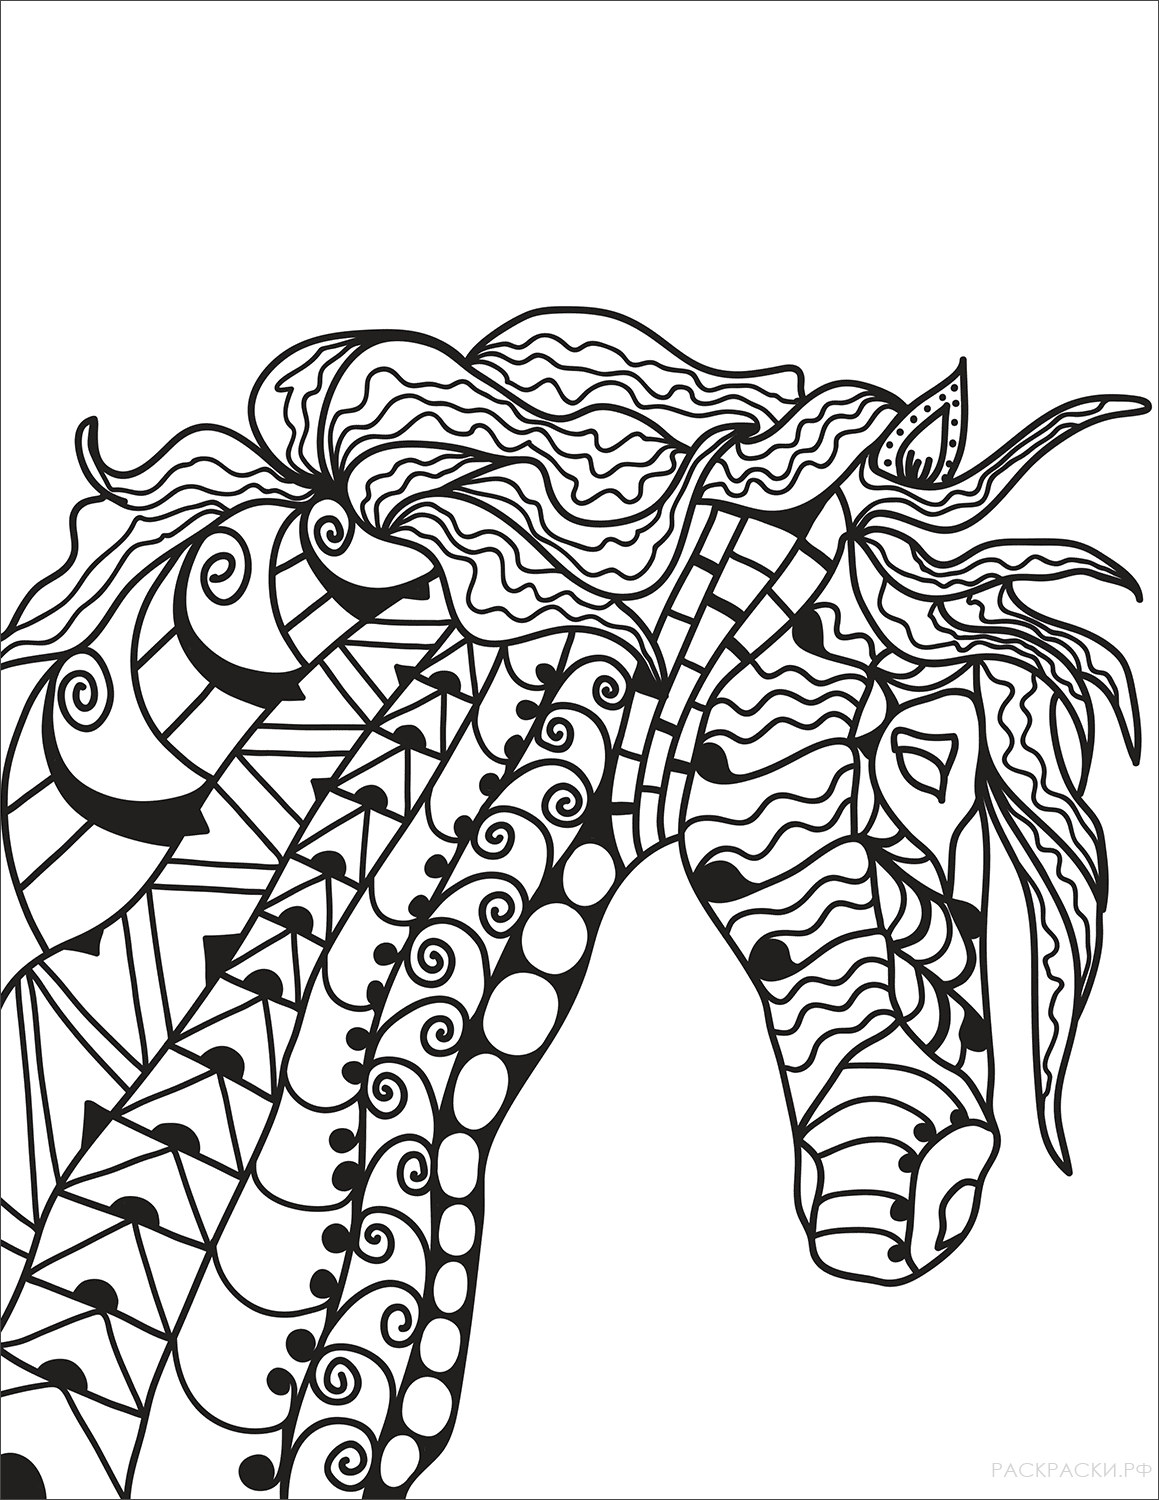 Раскраска Голова лошади в технике дзентангл 7